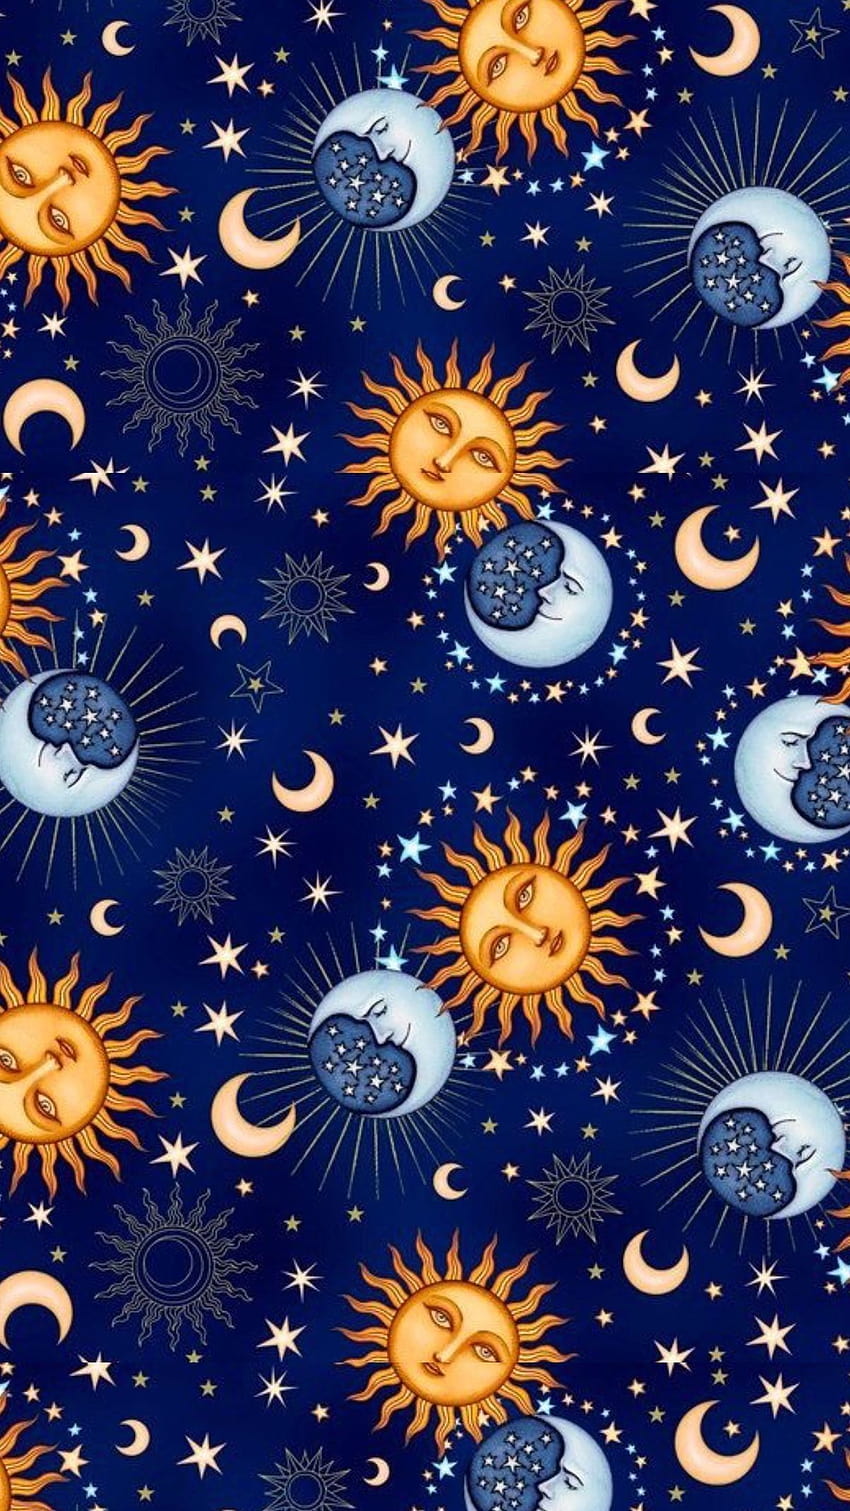 Sun and Moon iPhone, sun art HD phone wallpaper